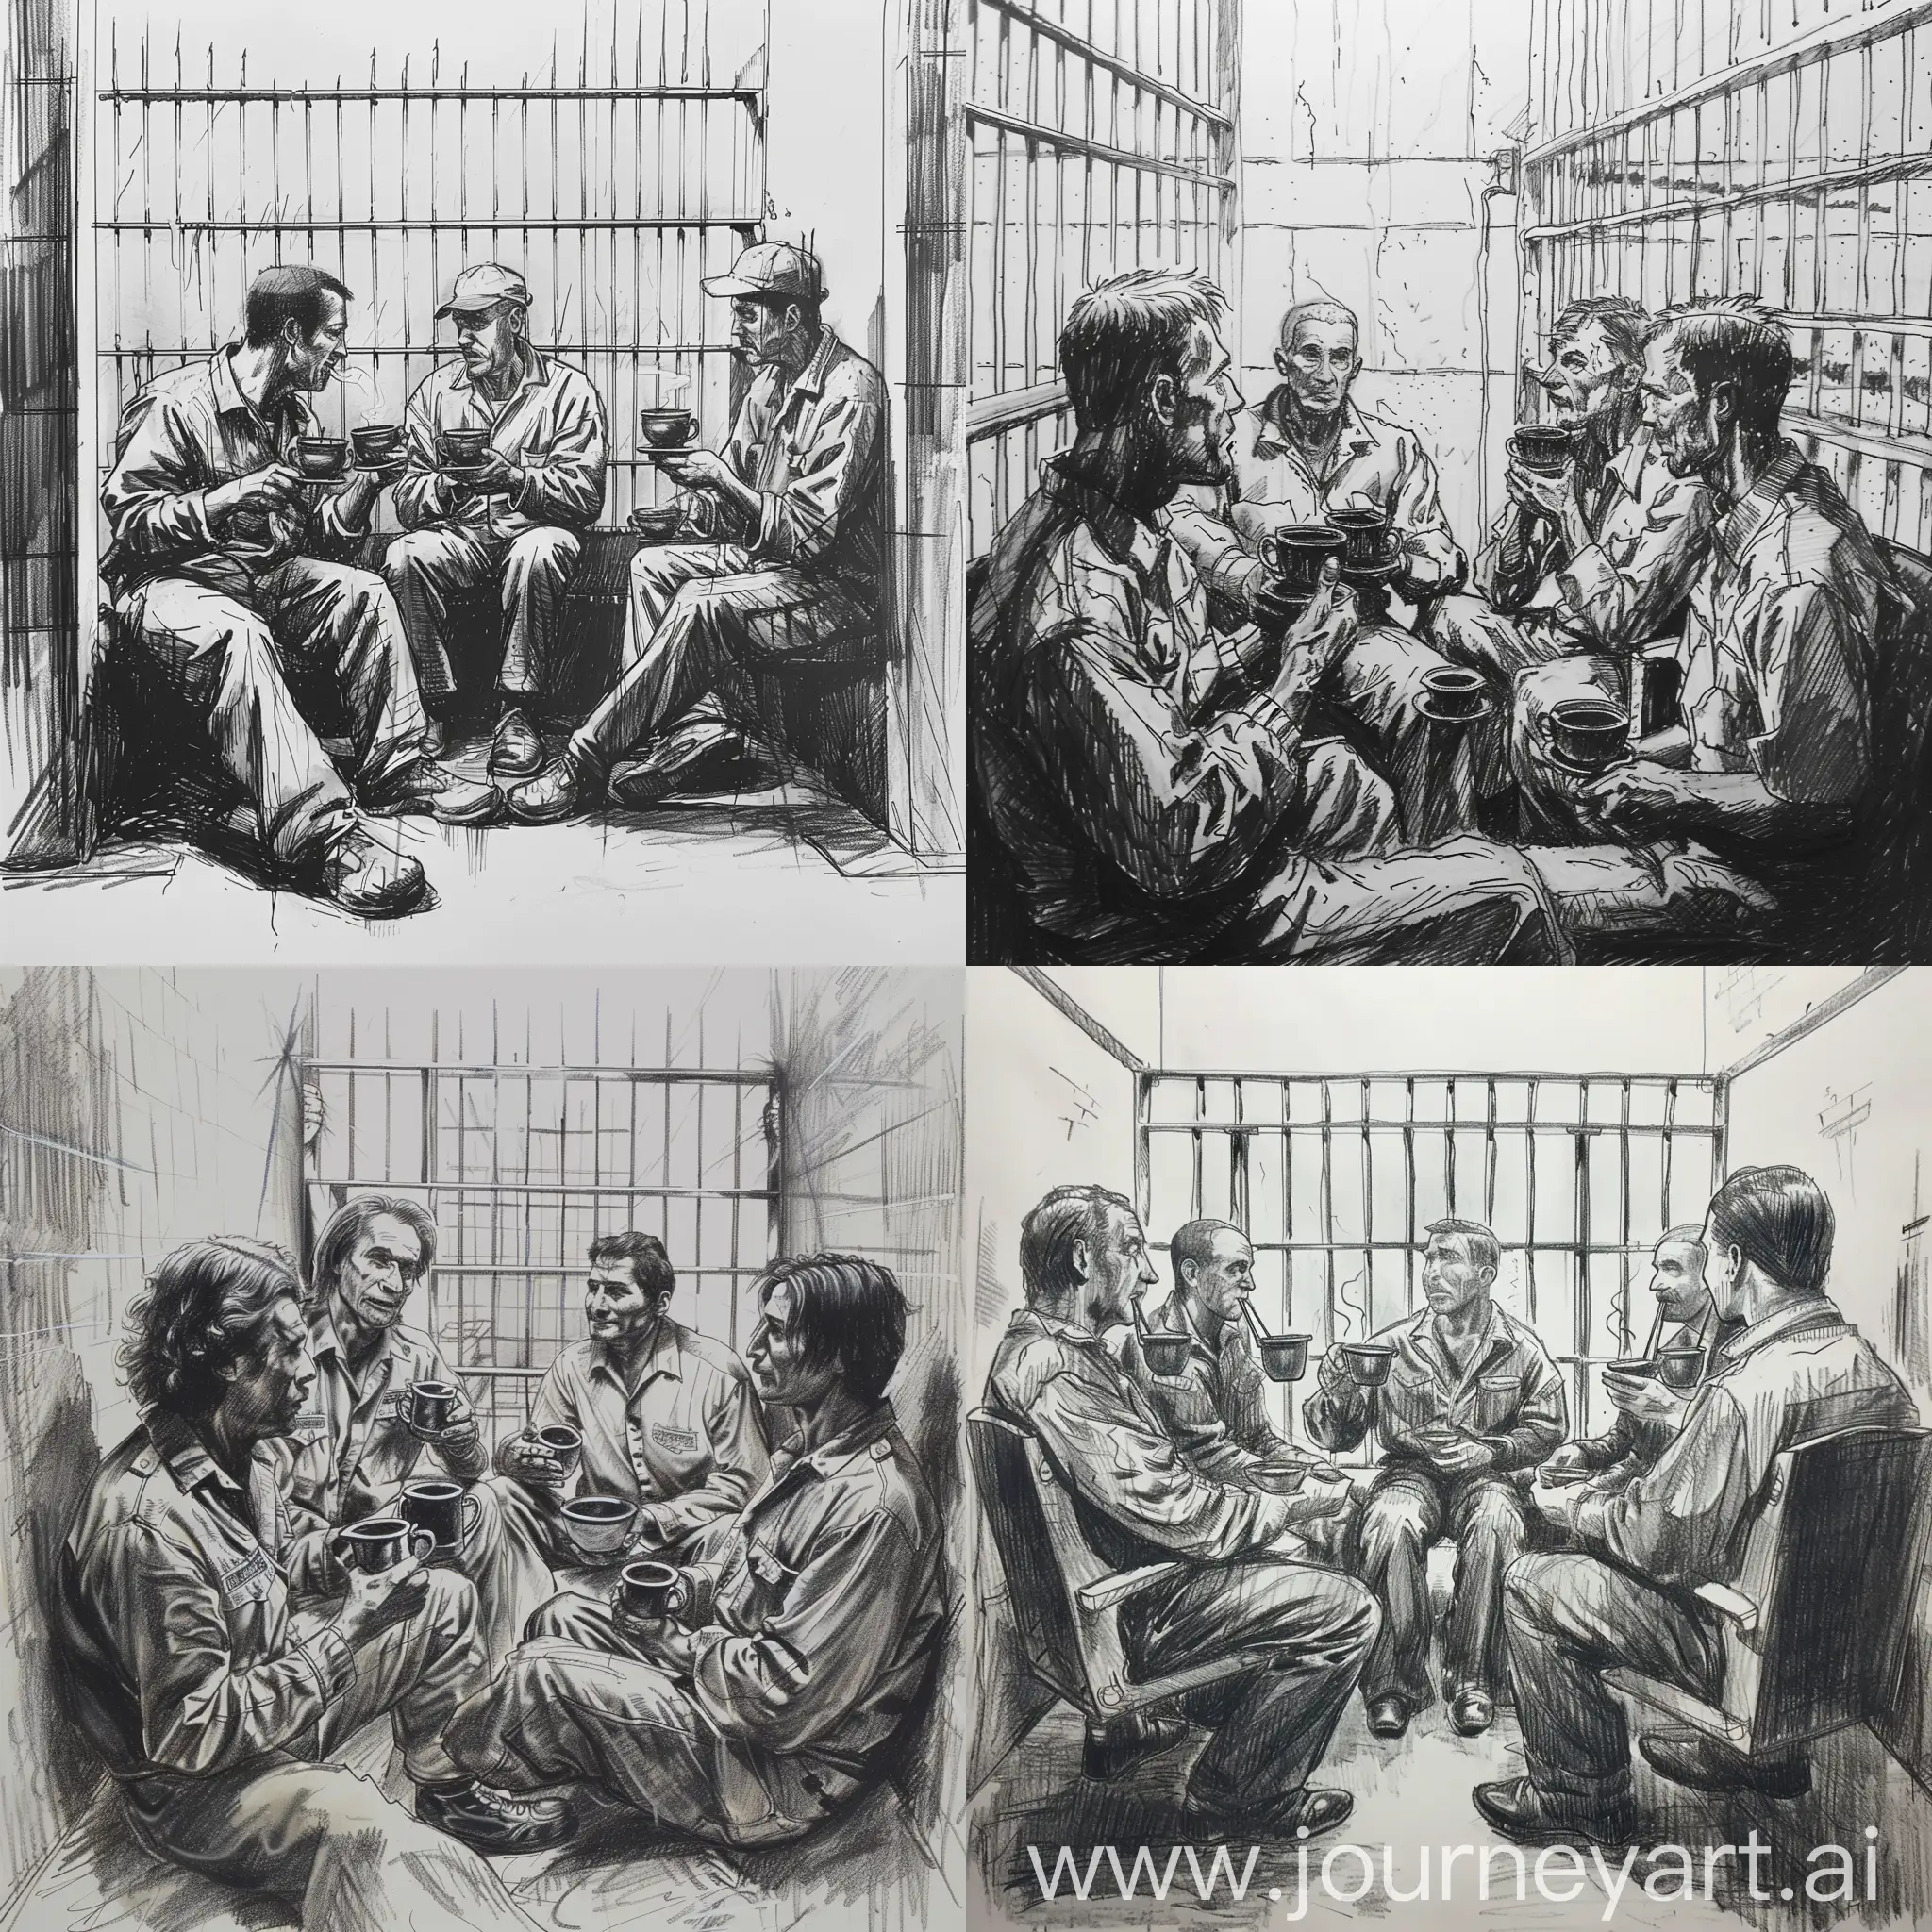 нарисовано карандашом сидят 4 зека в тюремной камере пьют чай из железных стаканов и общаются